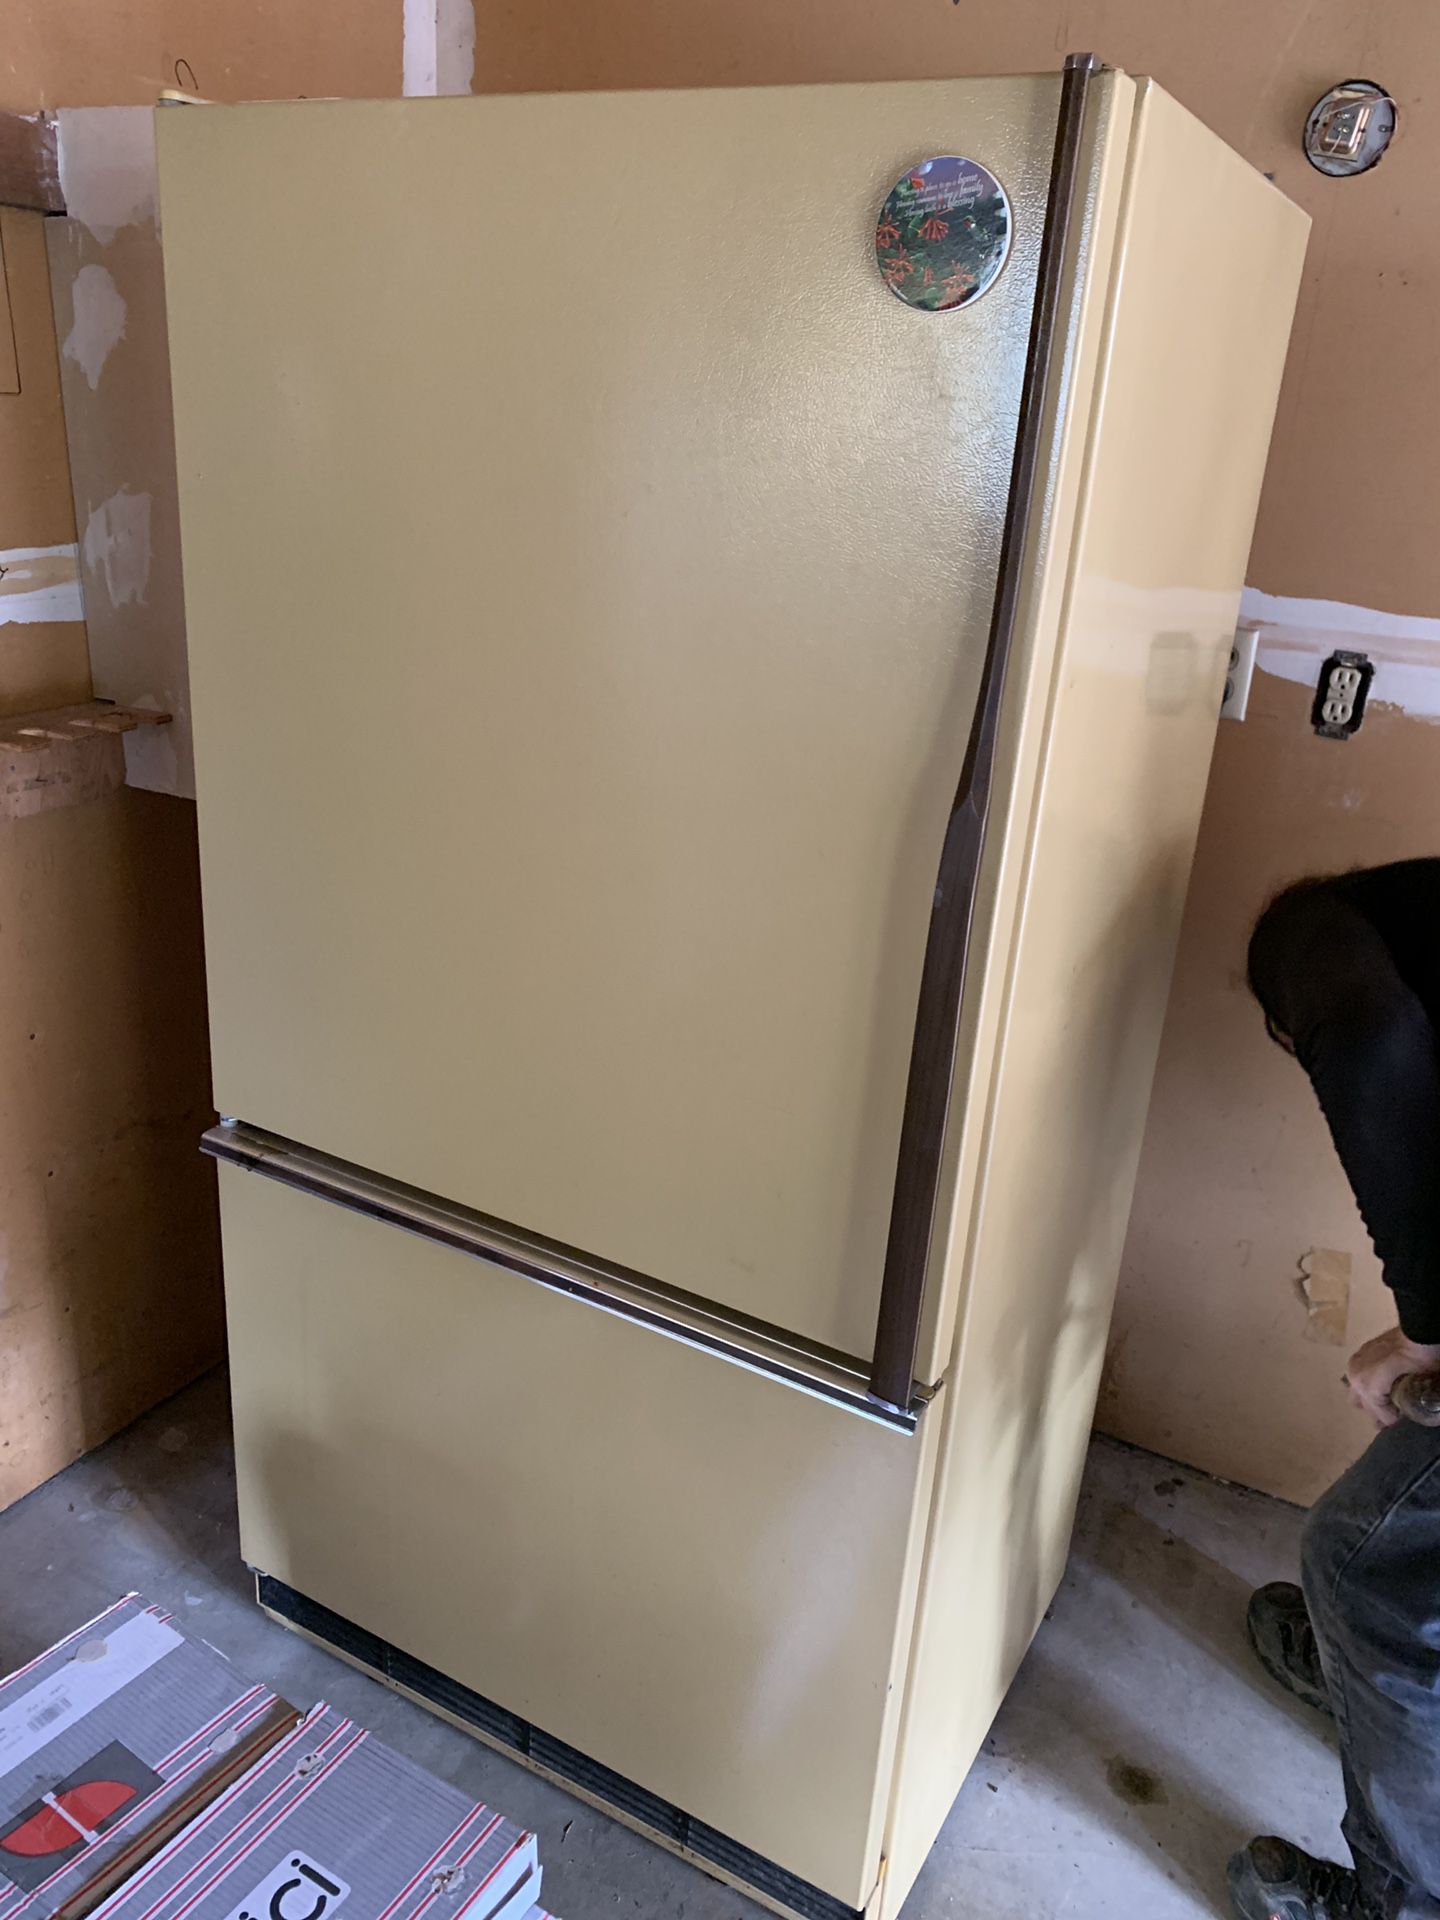 70’s yellow whirlpool fridge/freezer